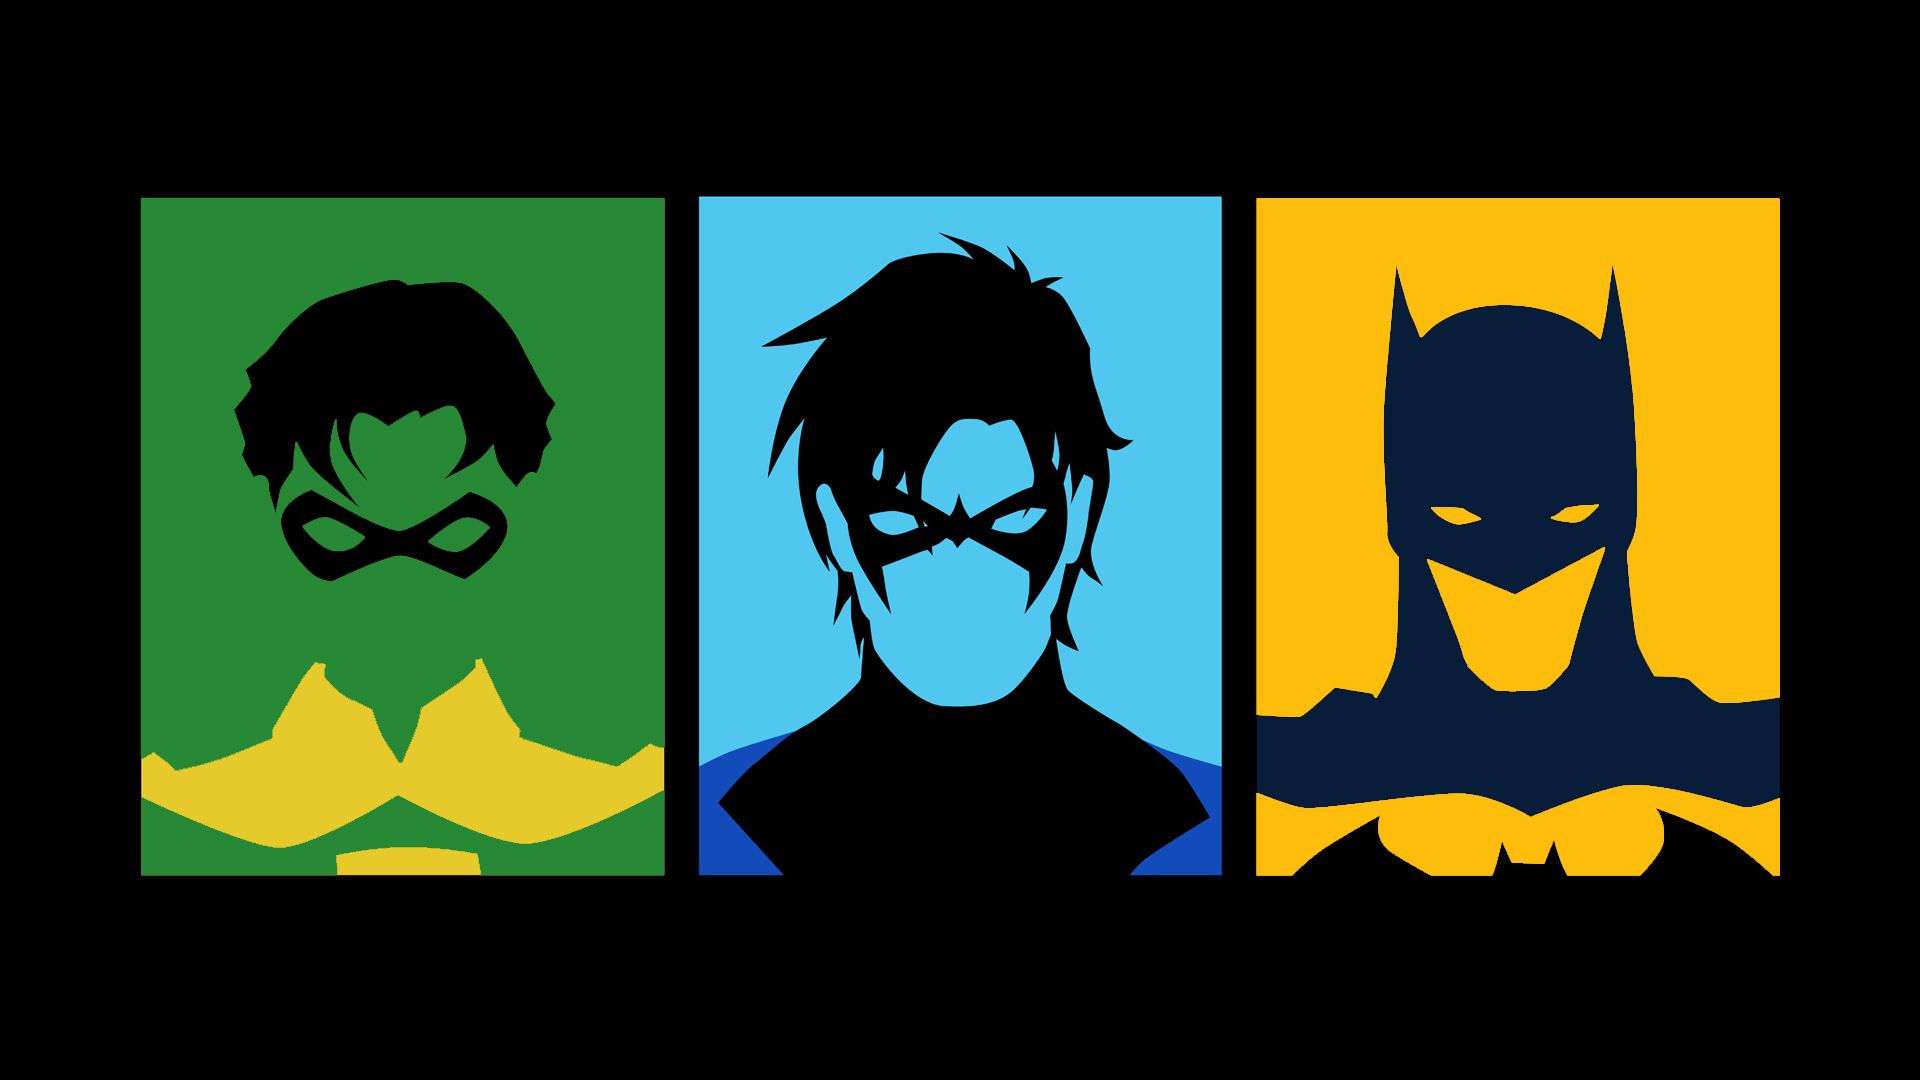 Скачать обои бесплатно Комиксы, Бэтмен, Найтвинг, Робин (Комиксы Dc) картинка на рабочий стол ПК